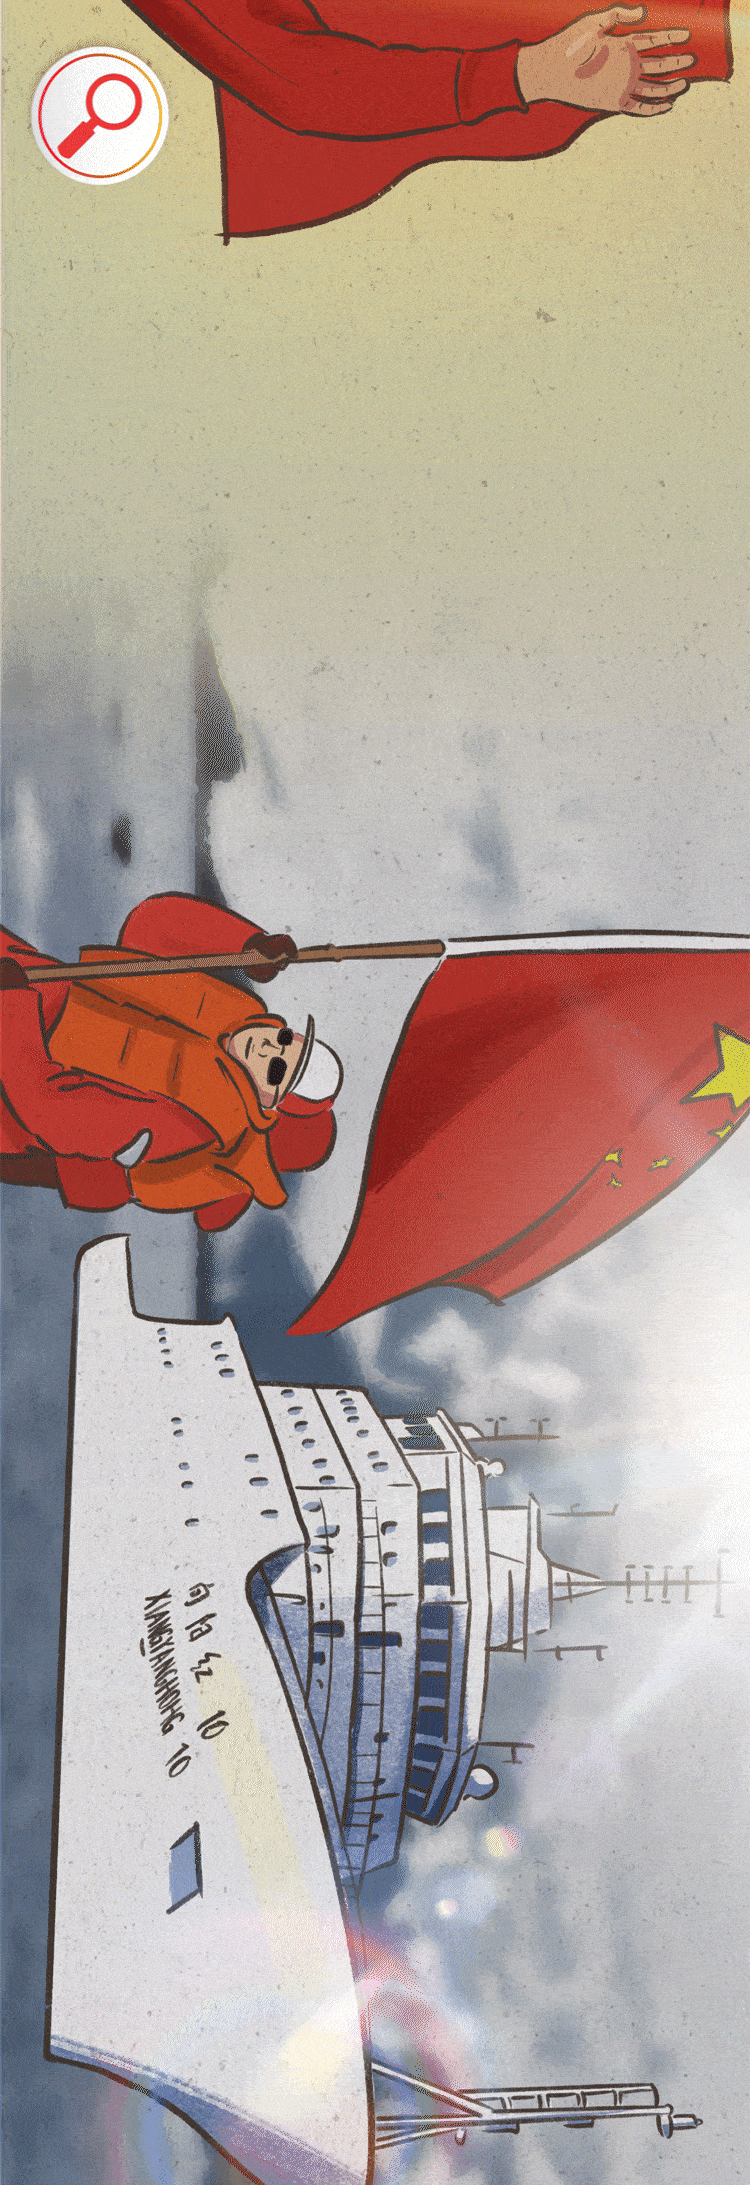 中国国旗q版图片图片